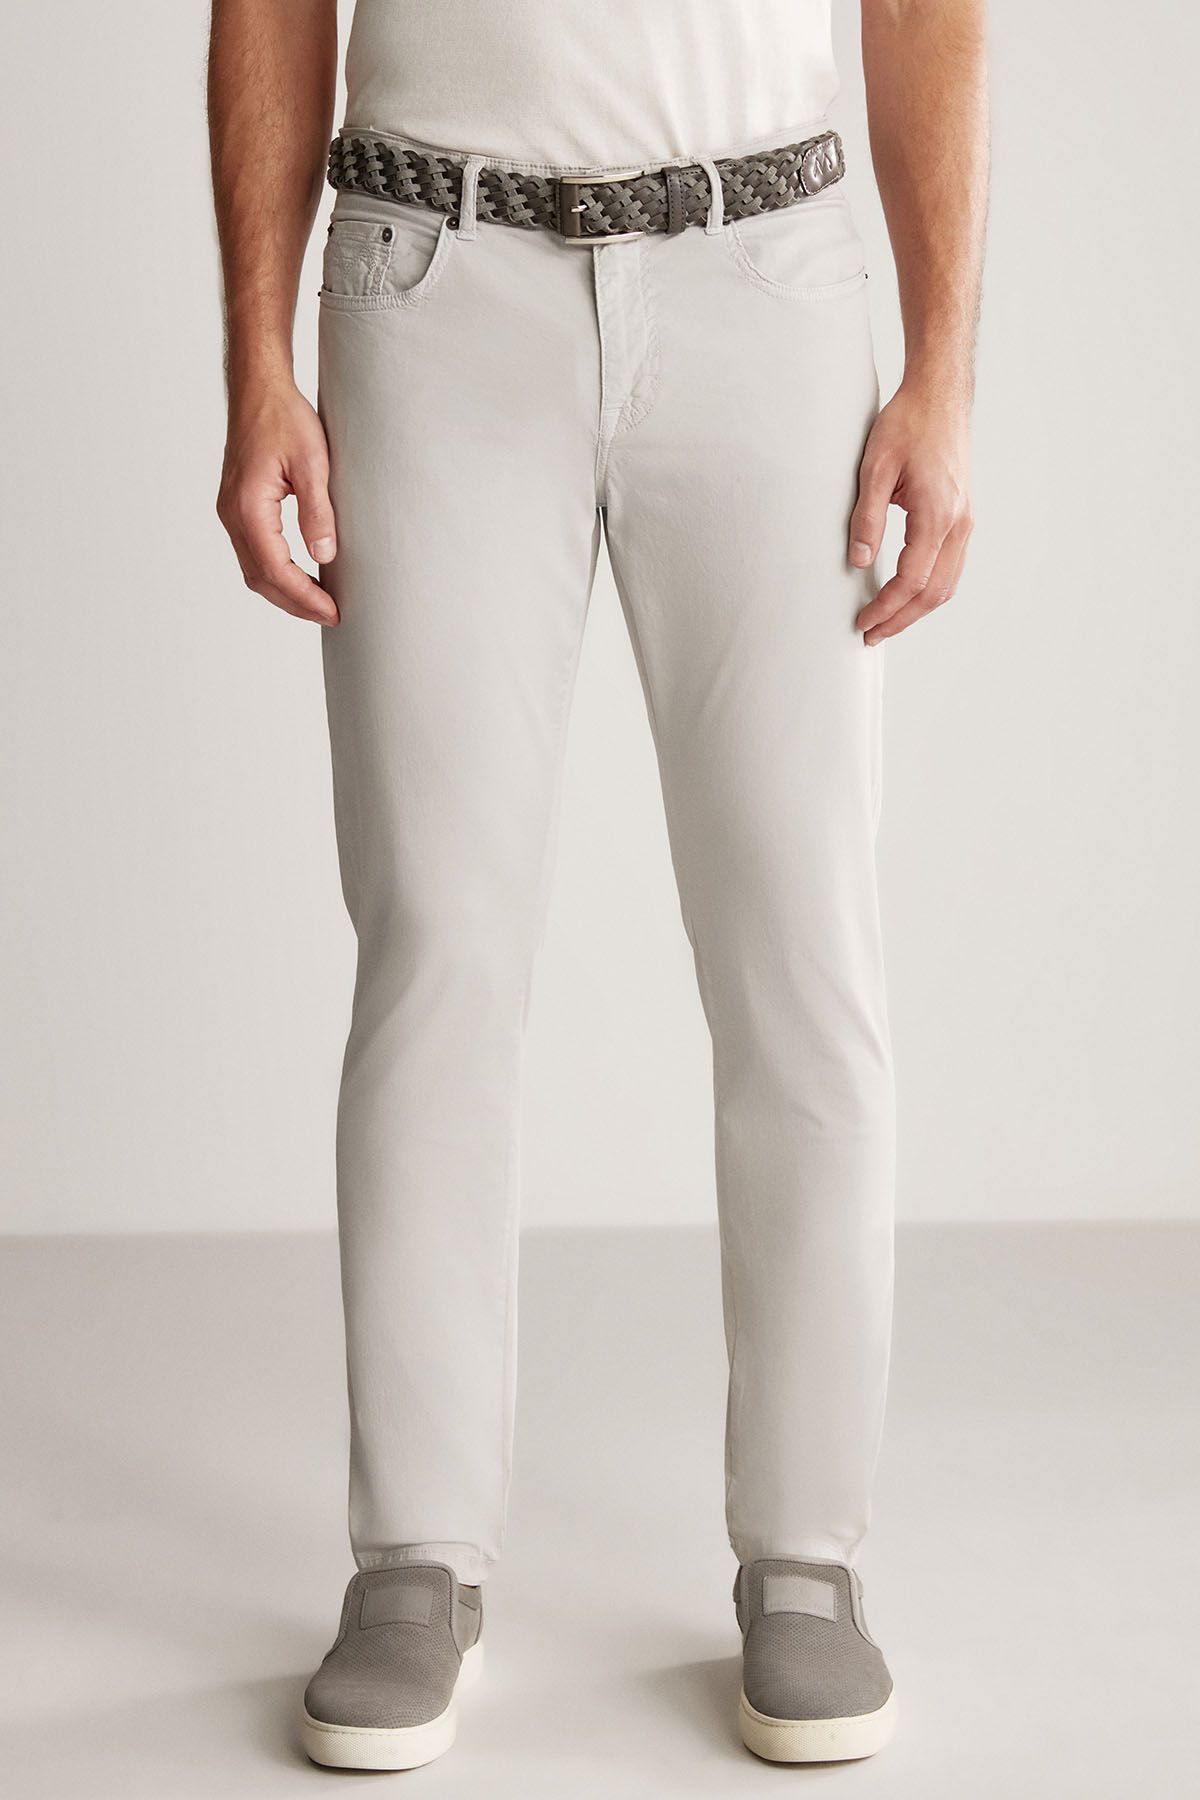 Hemington Slim Fit 5 Cep Açık Gri Yazlık Pantolon